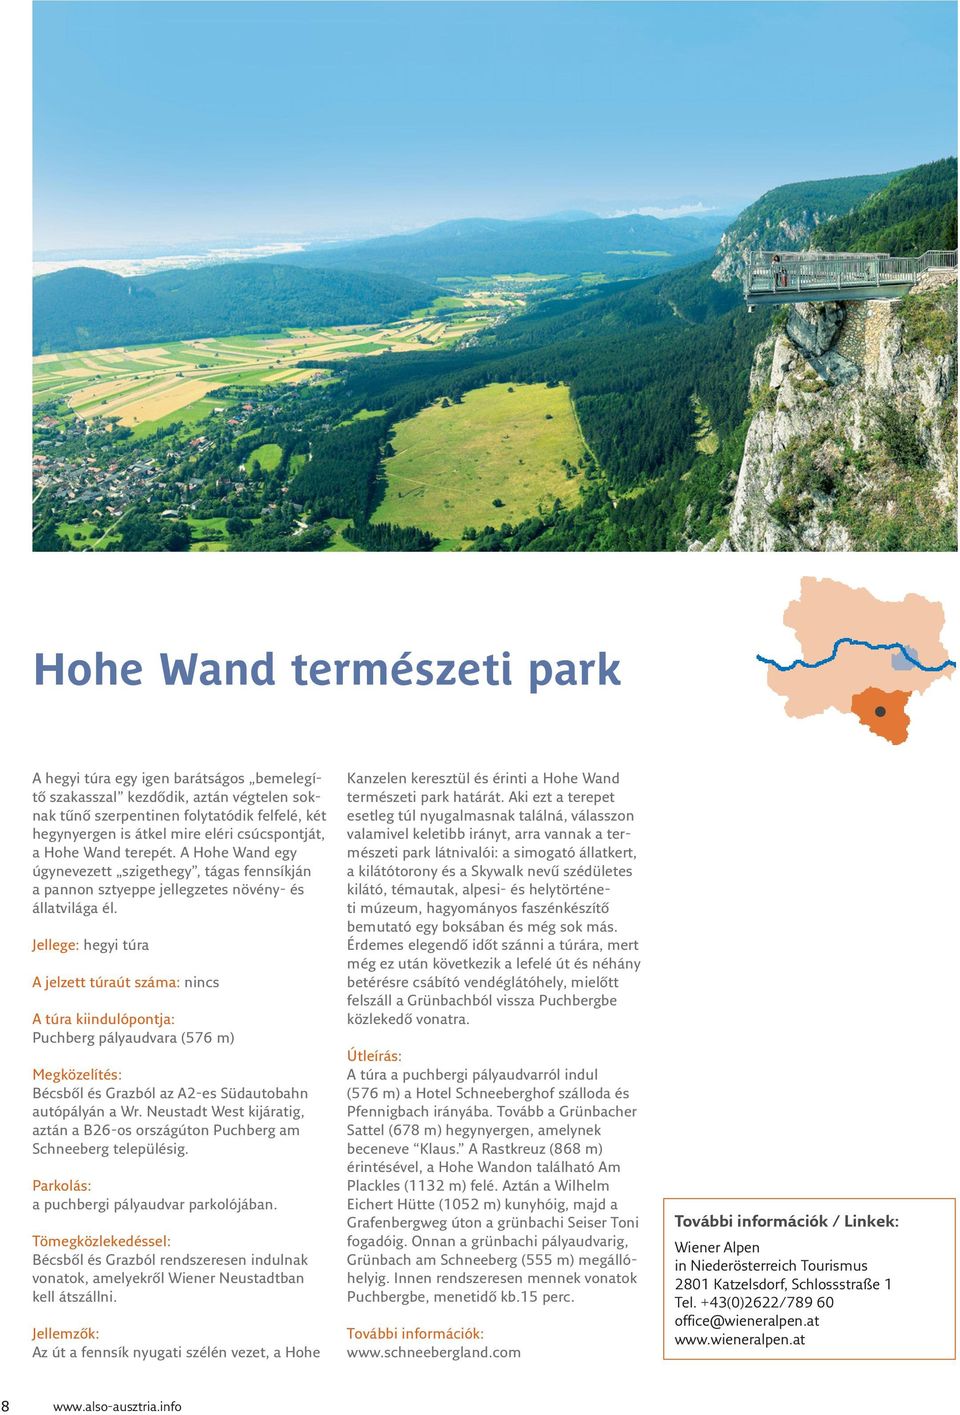 Jellege: hegyi túra A jelzett túraút száma: nincs A túra kiindulópontja: Puchberg pályaudvara (576 m) Megközelítés: Bécsből és Grazból az A2-es Südautobahn autópályán a Wr.